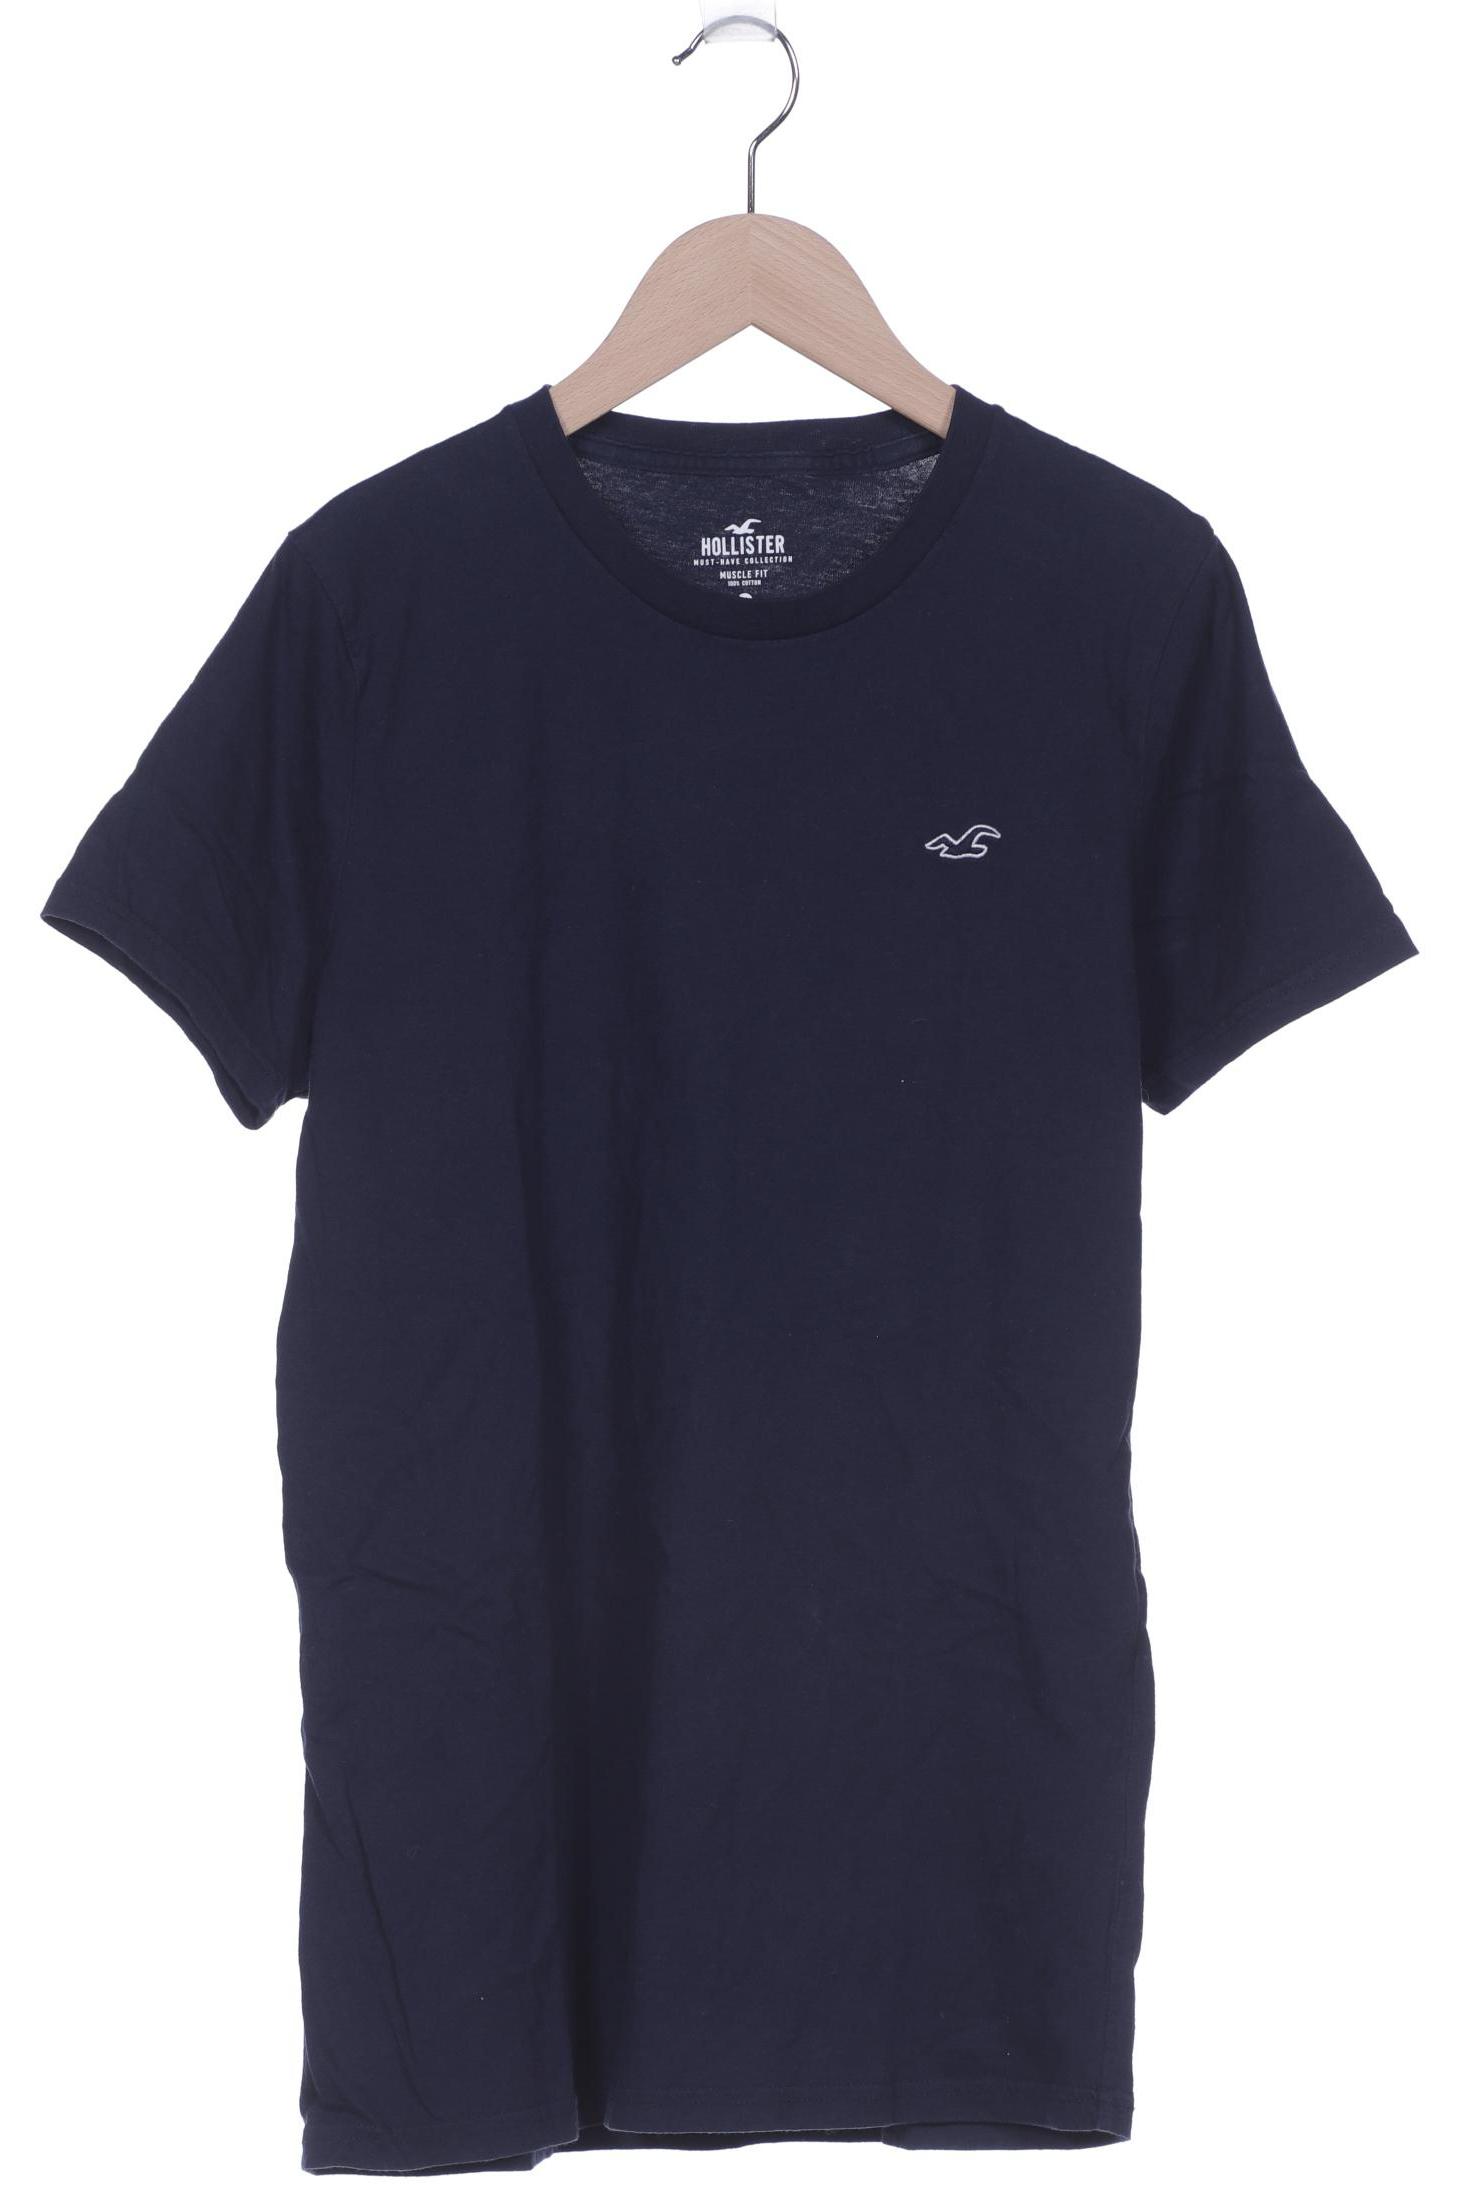 Hollister Herren T-Shirt, marineblau von Hollister